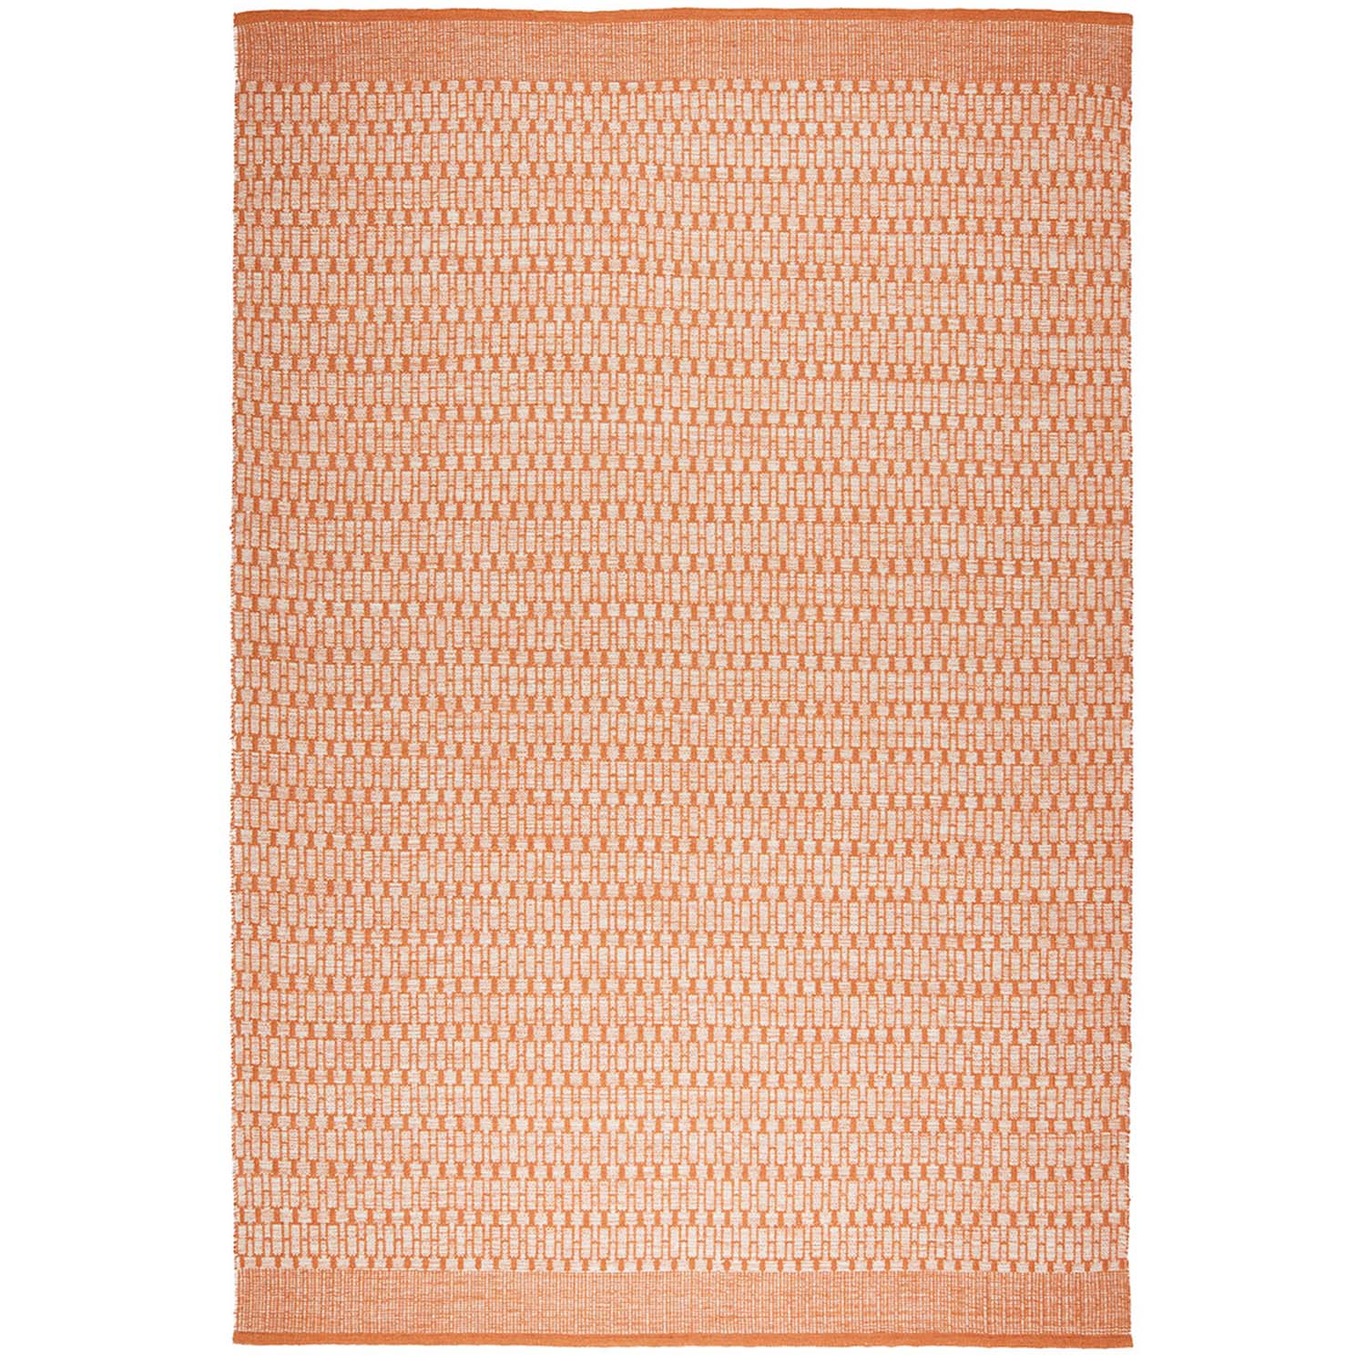 Mahi Wool Rug Off-white / Orange, 200x300 cm